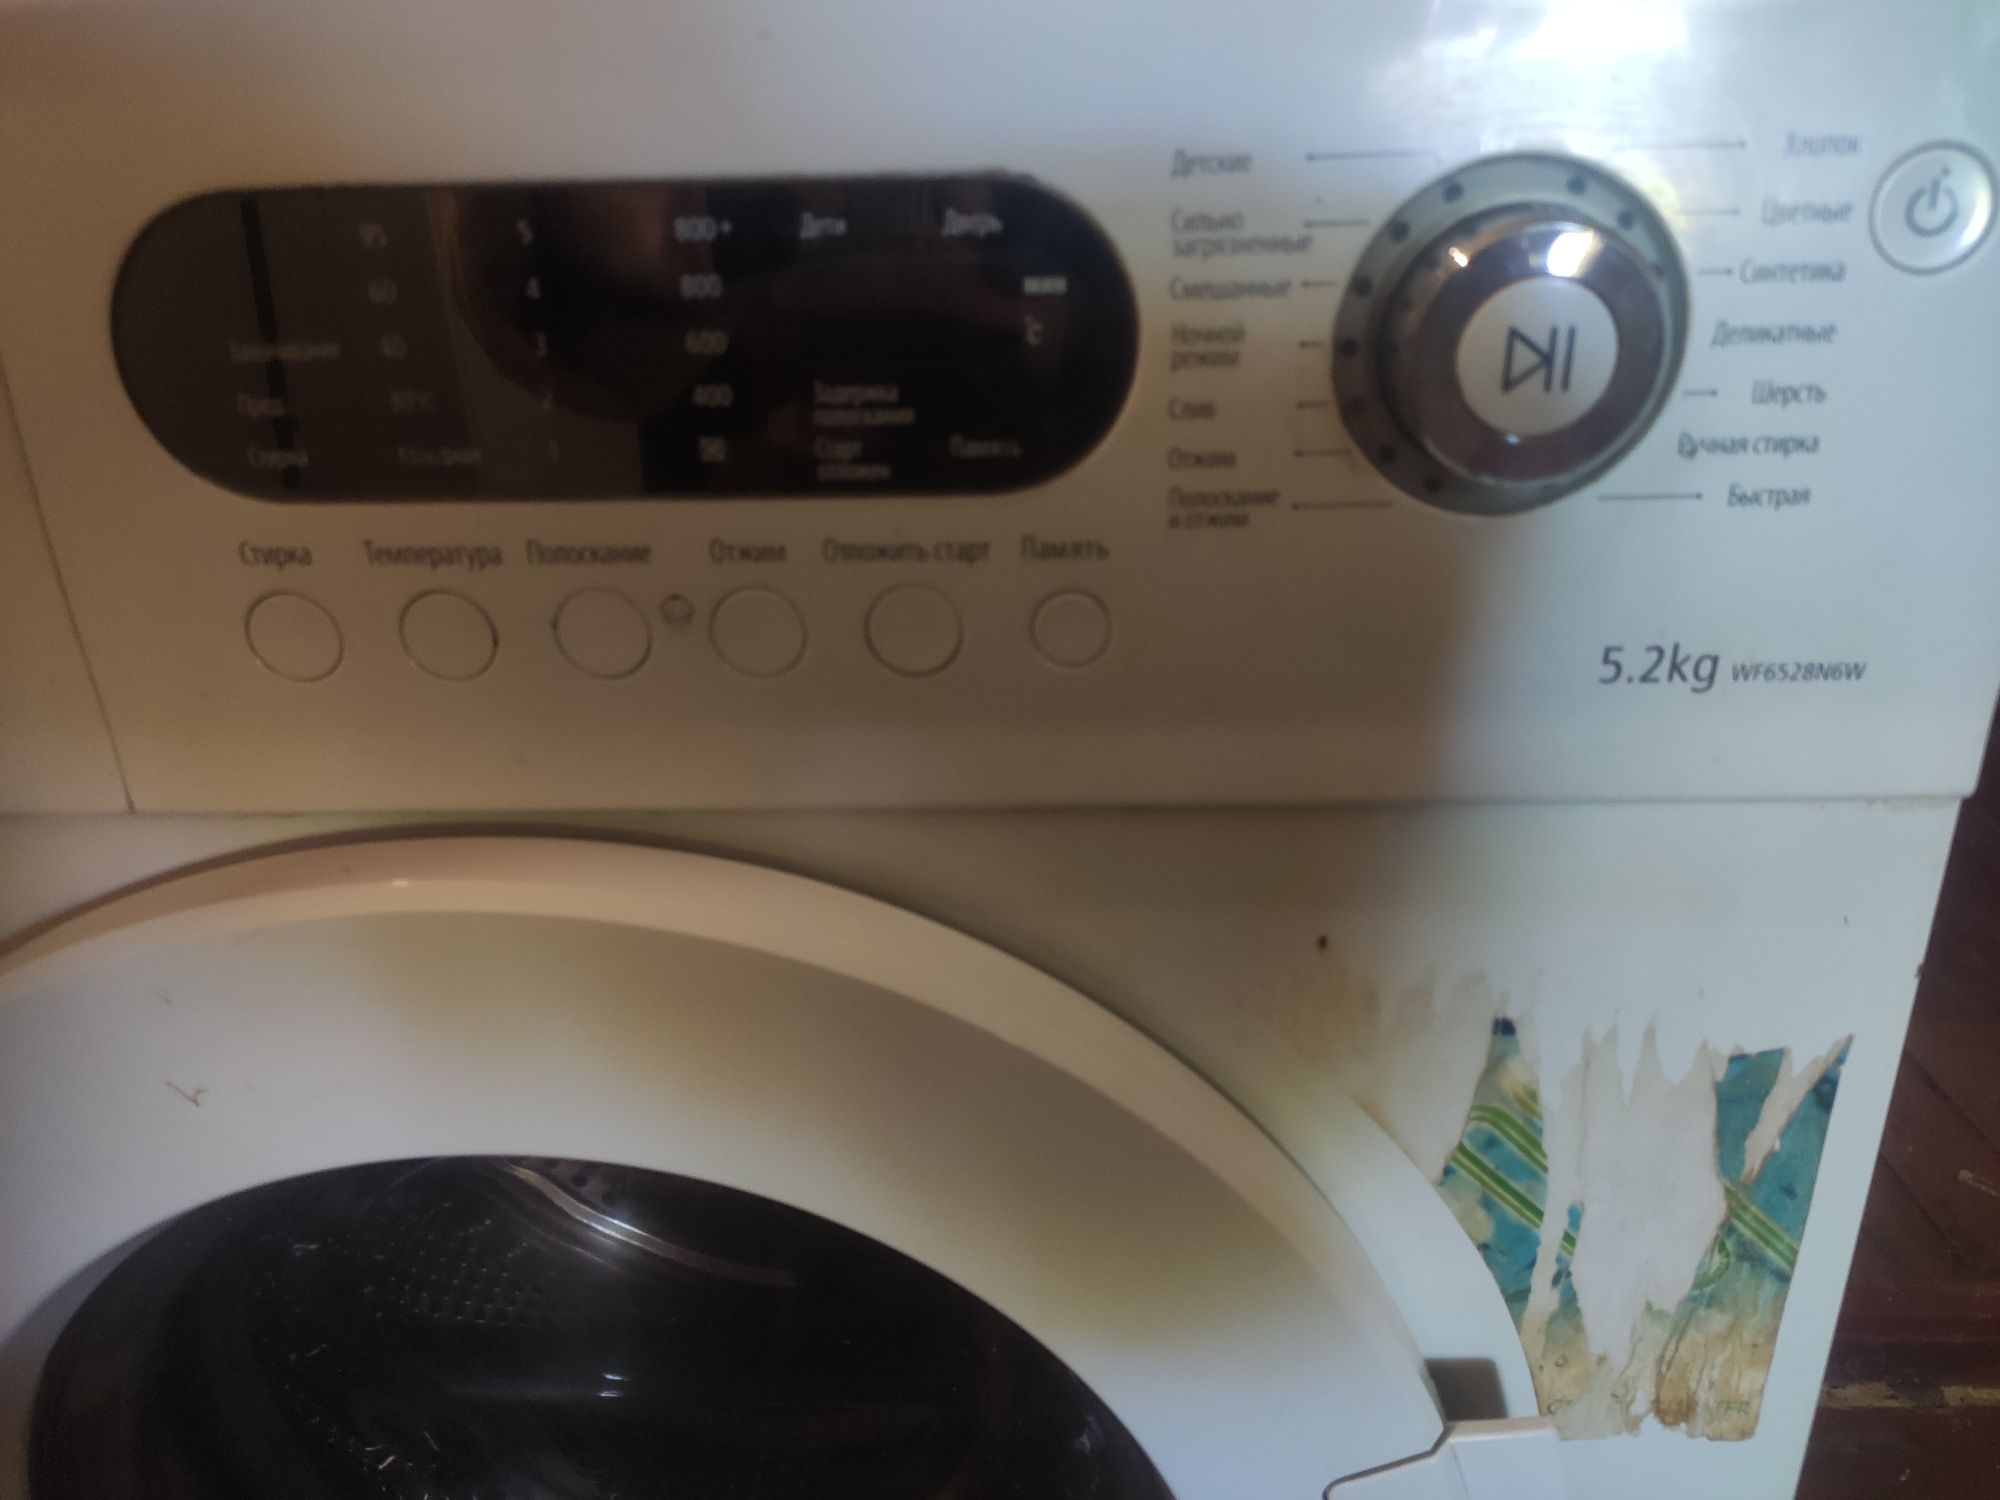 Продам по запчастям стиральную машину Самсунг на 5.2 кг.